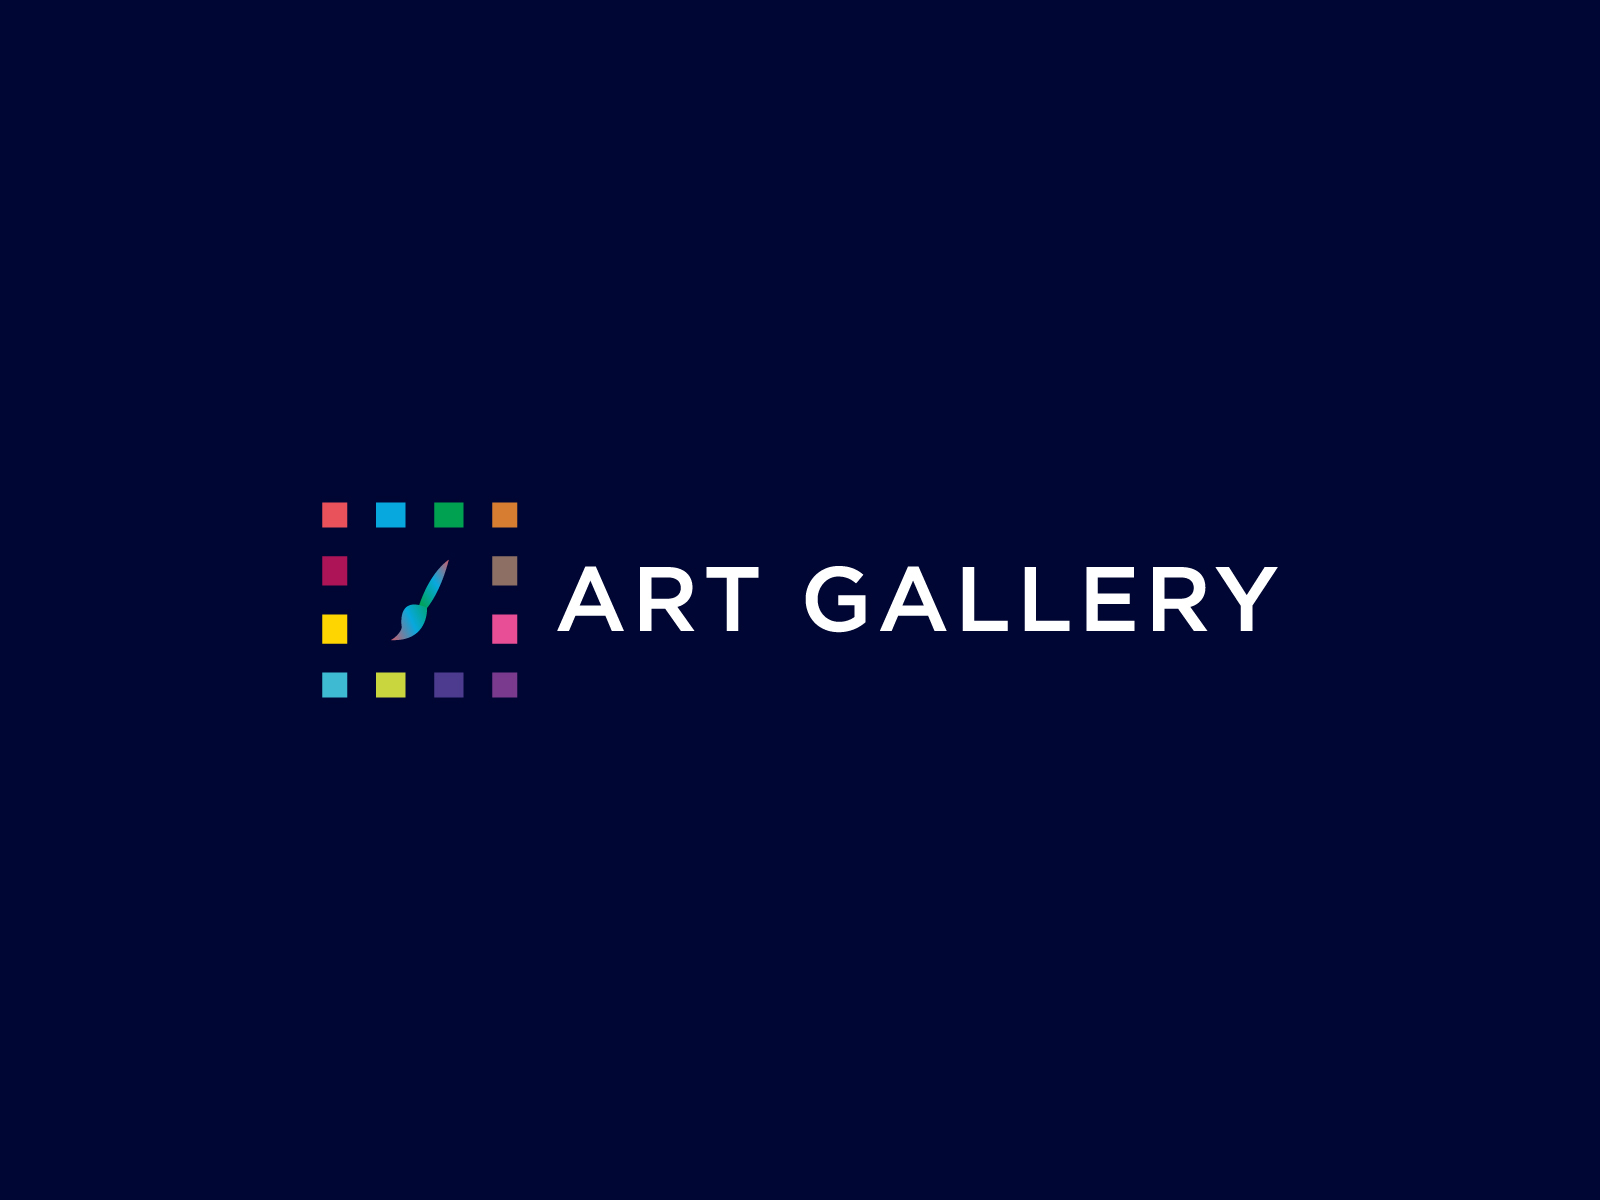 Art Gallery Logo Design Concept By Freelancer Iqbal On Dribbble